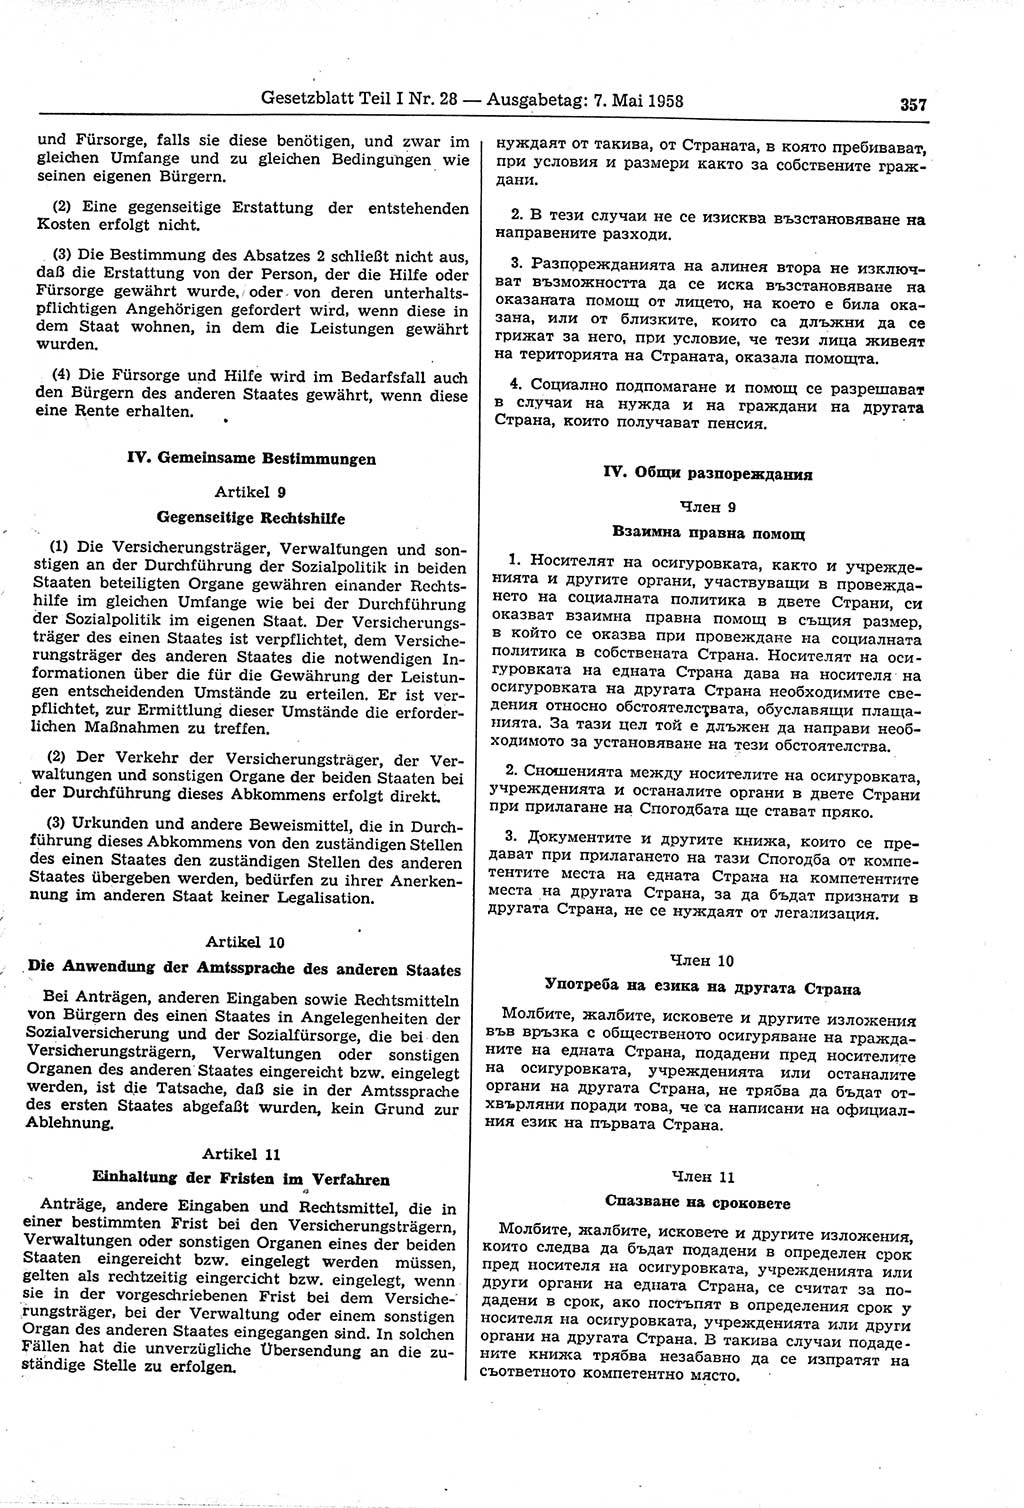 Gesetzblatt (GBl.) der Deutschen Demokratischen Republik (DDR) Teil Ⅰ 1958, Seite 357 (GBl. DDR Ⅰ 1958, S. 357)